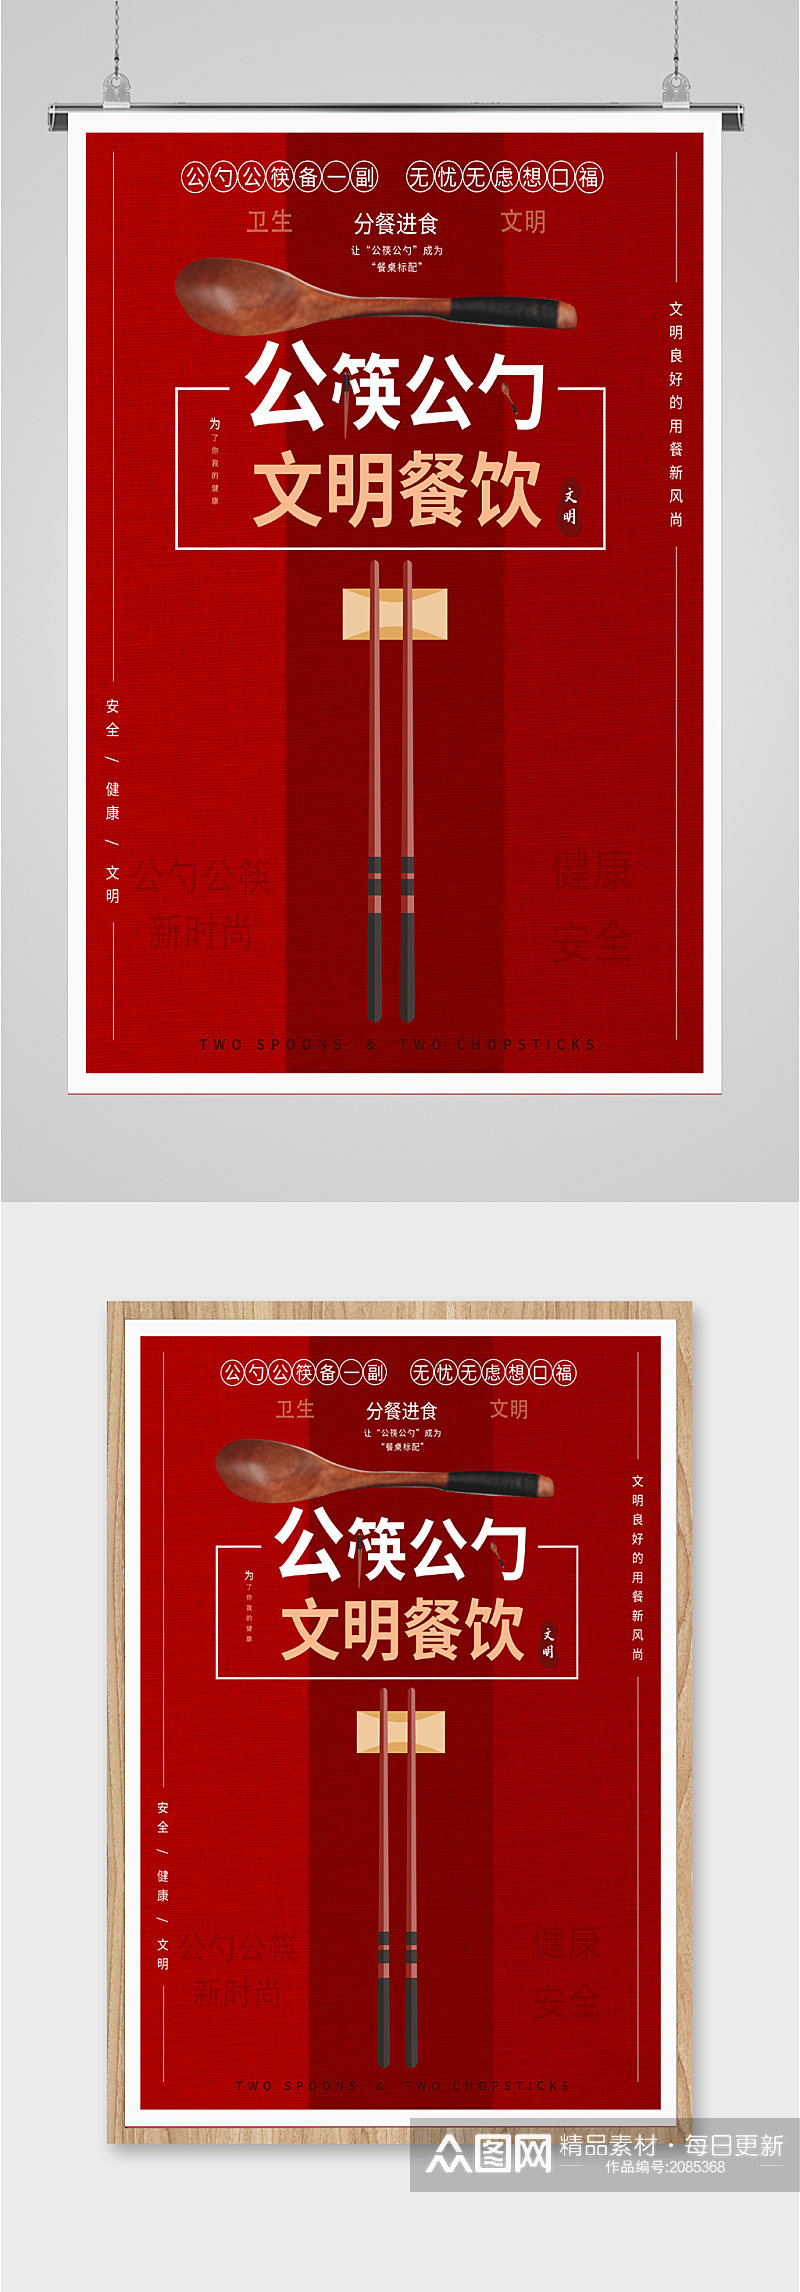 公筷公勺文明餐饮海报素材